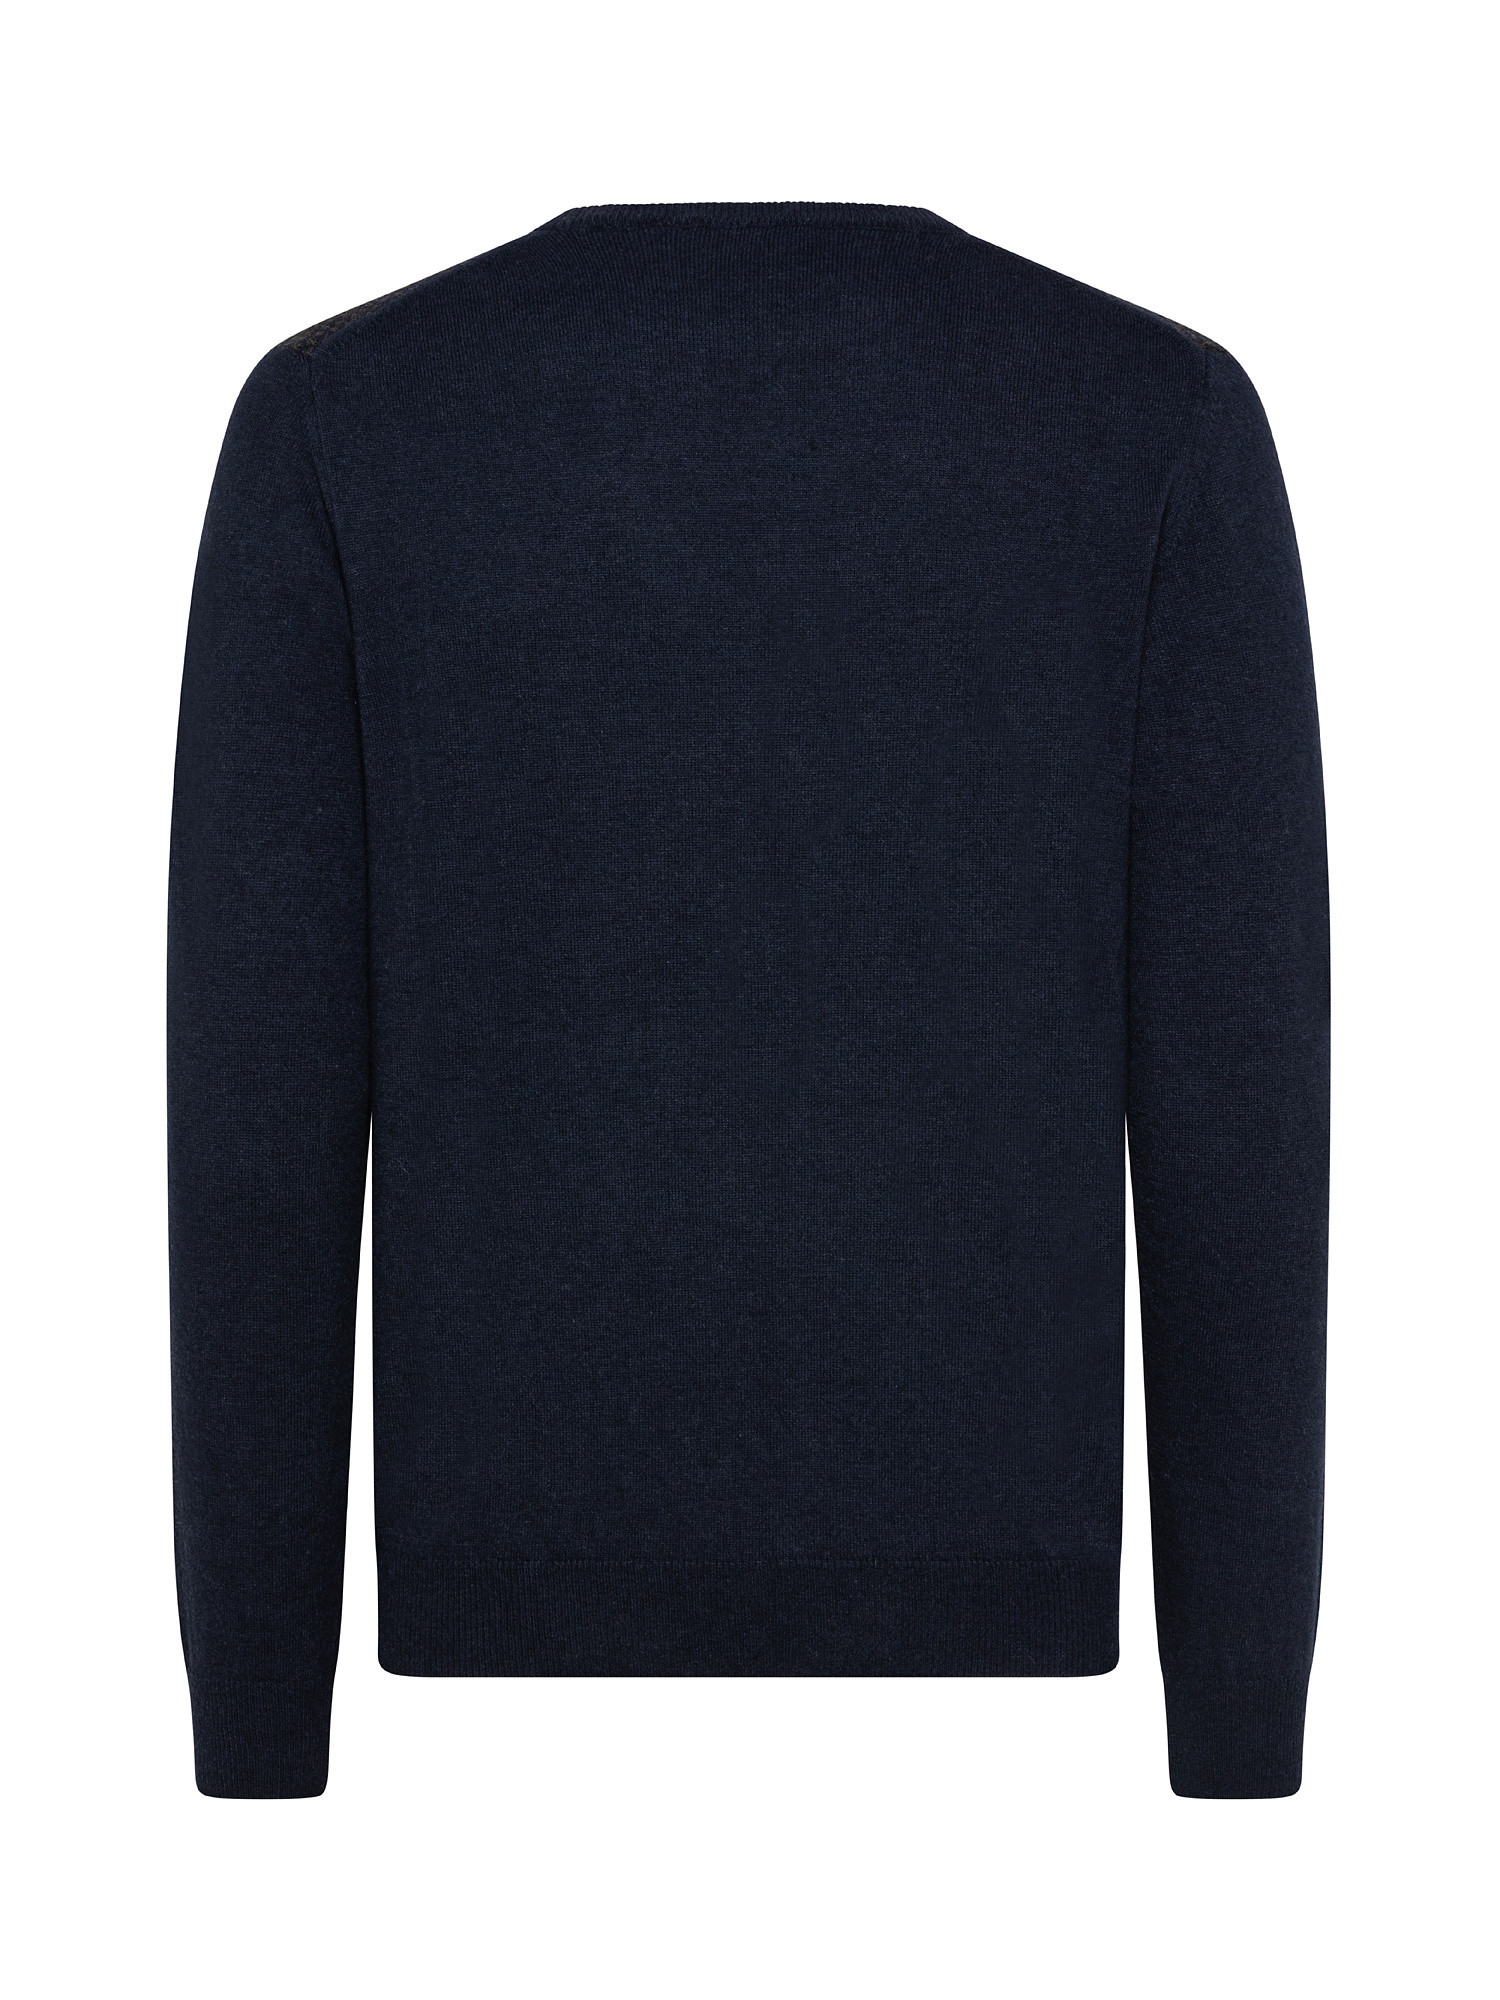 Pullover girocollo in lana, Blu, large image number 1